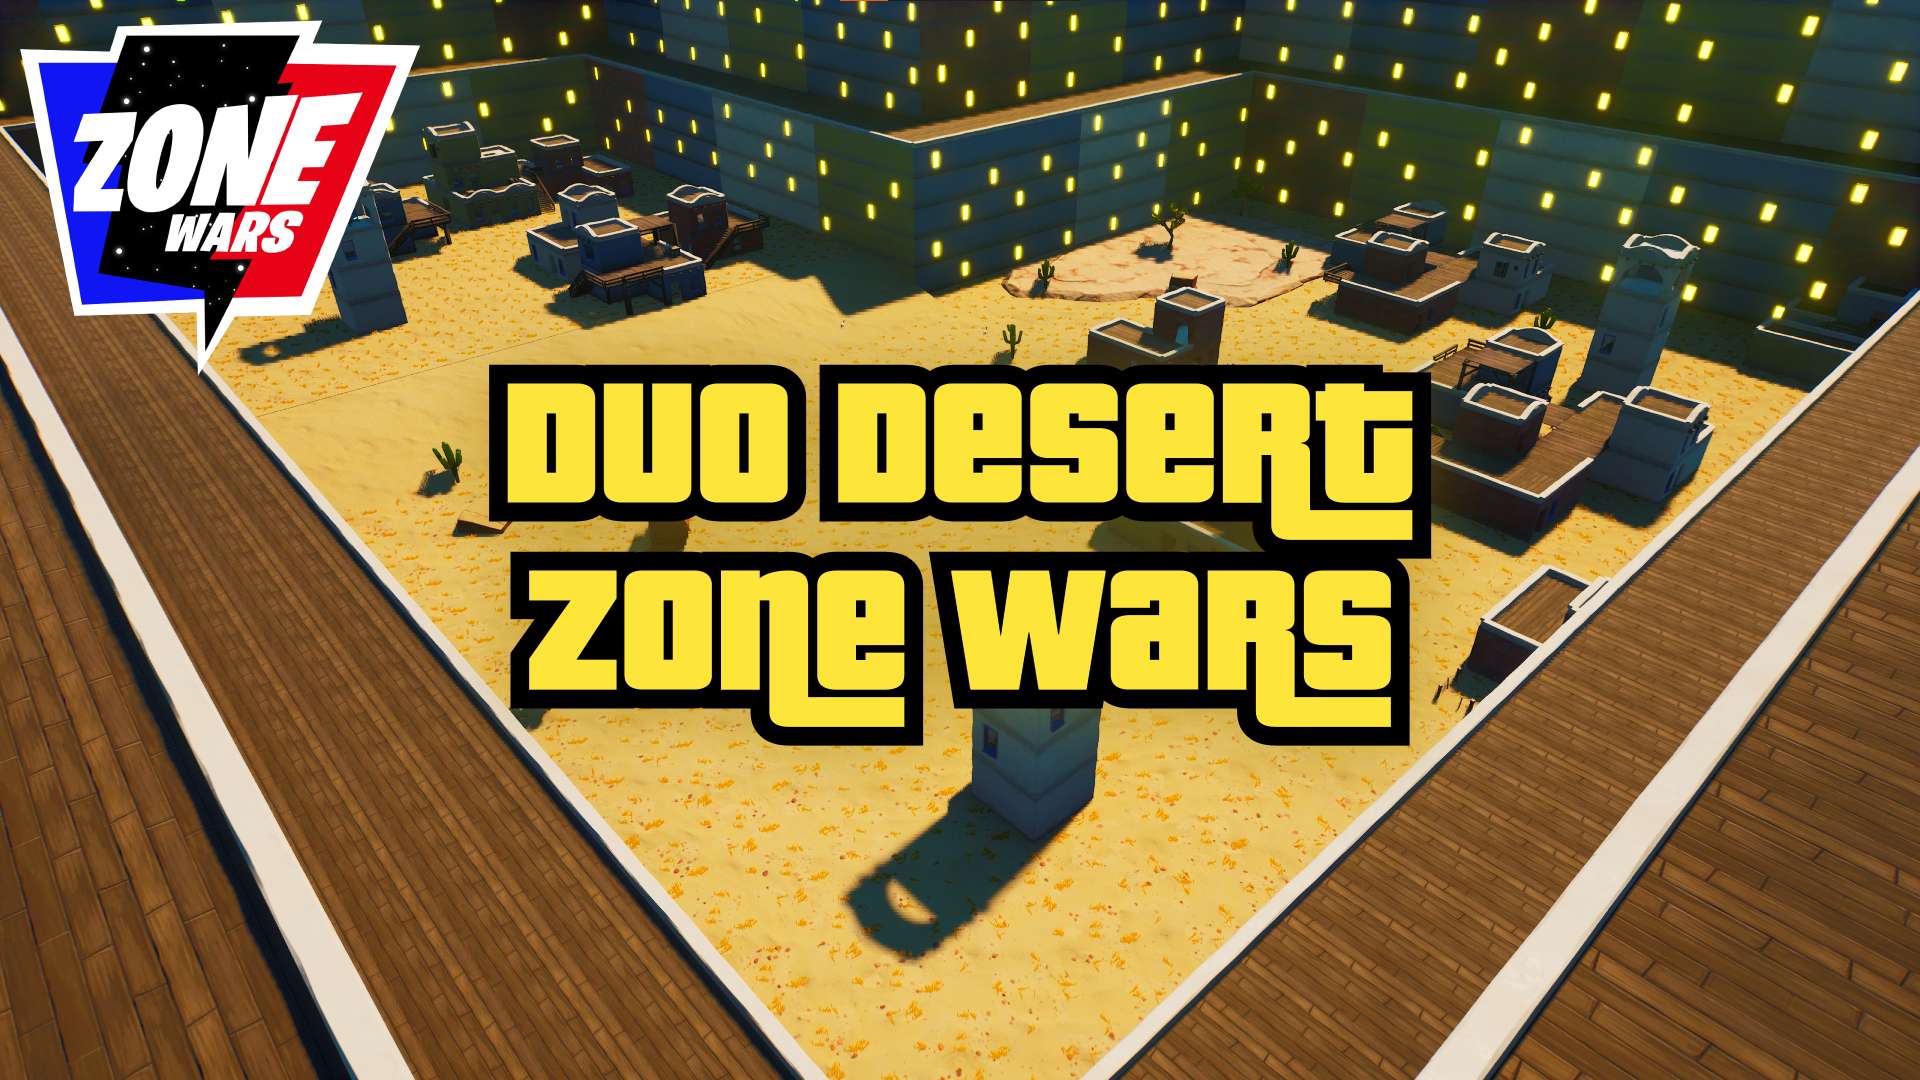 DUO DESERT ZONE WARS